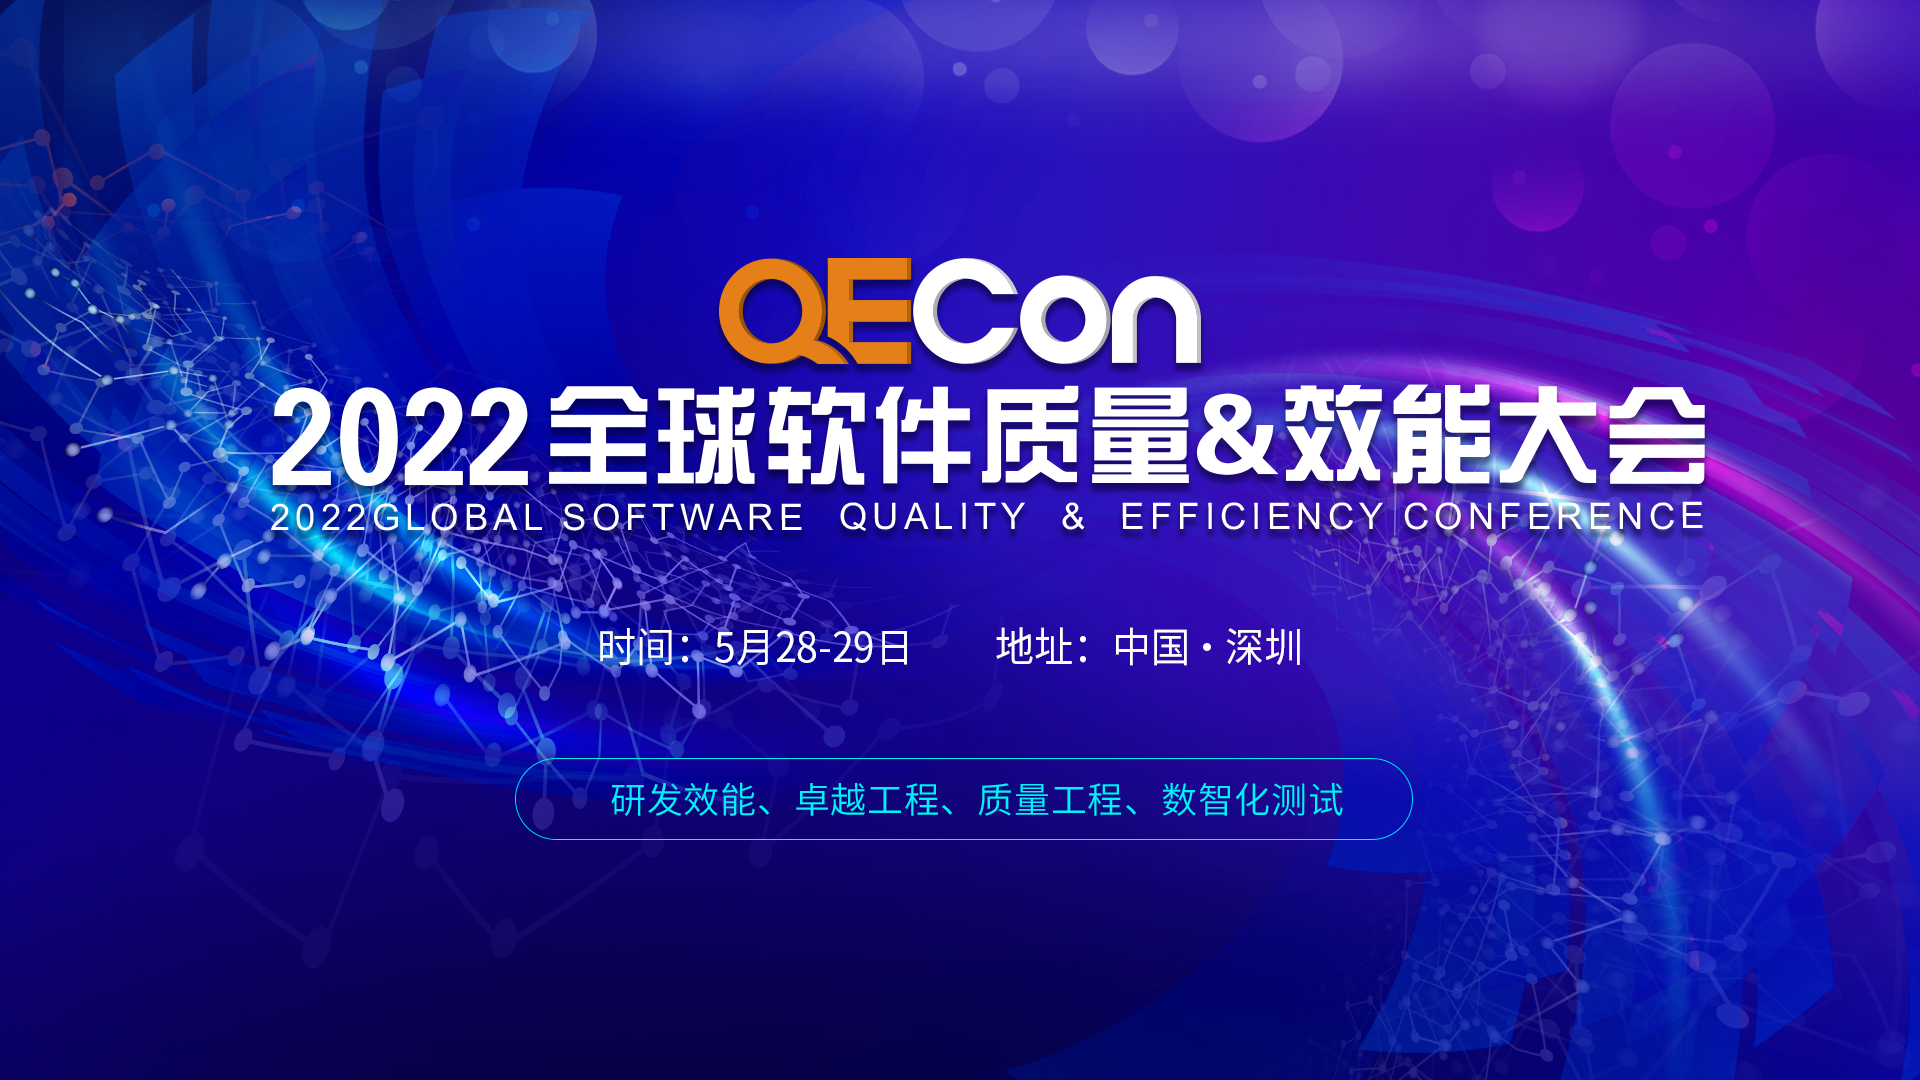 第五届QECon全球软件质量&效能大会 - 深圳站